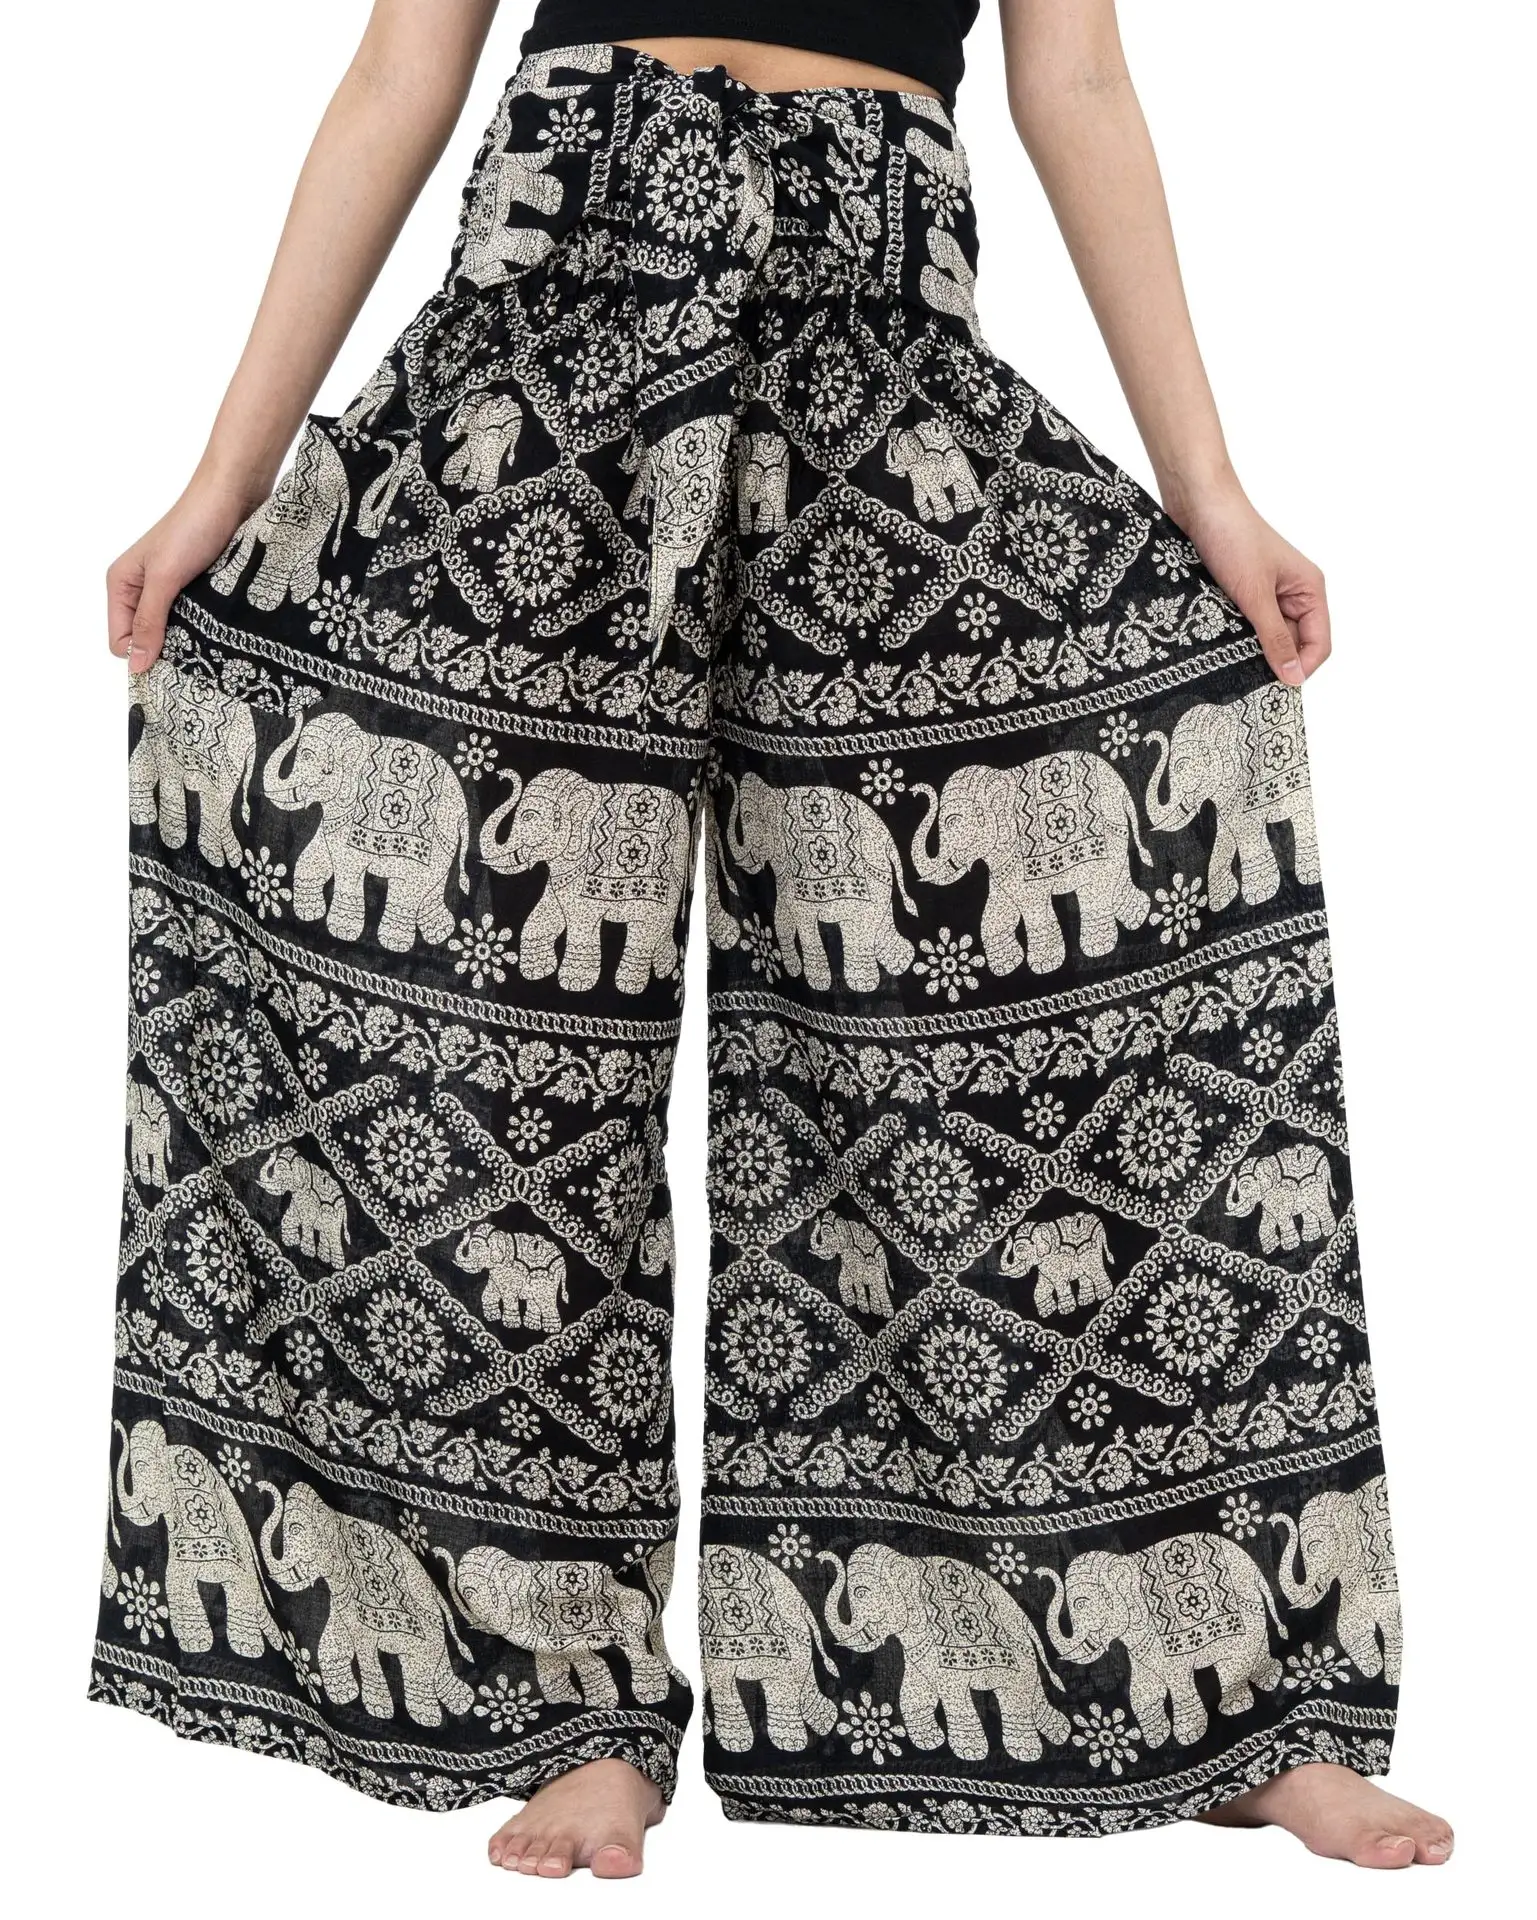 Pantalon smocké taille large pour femme, imprimé africain, pantalon indien avec poche latérale